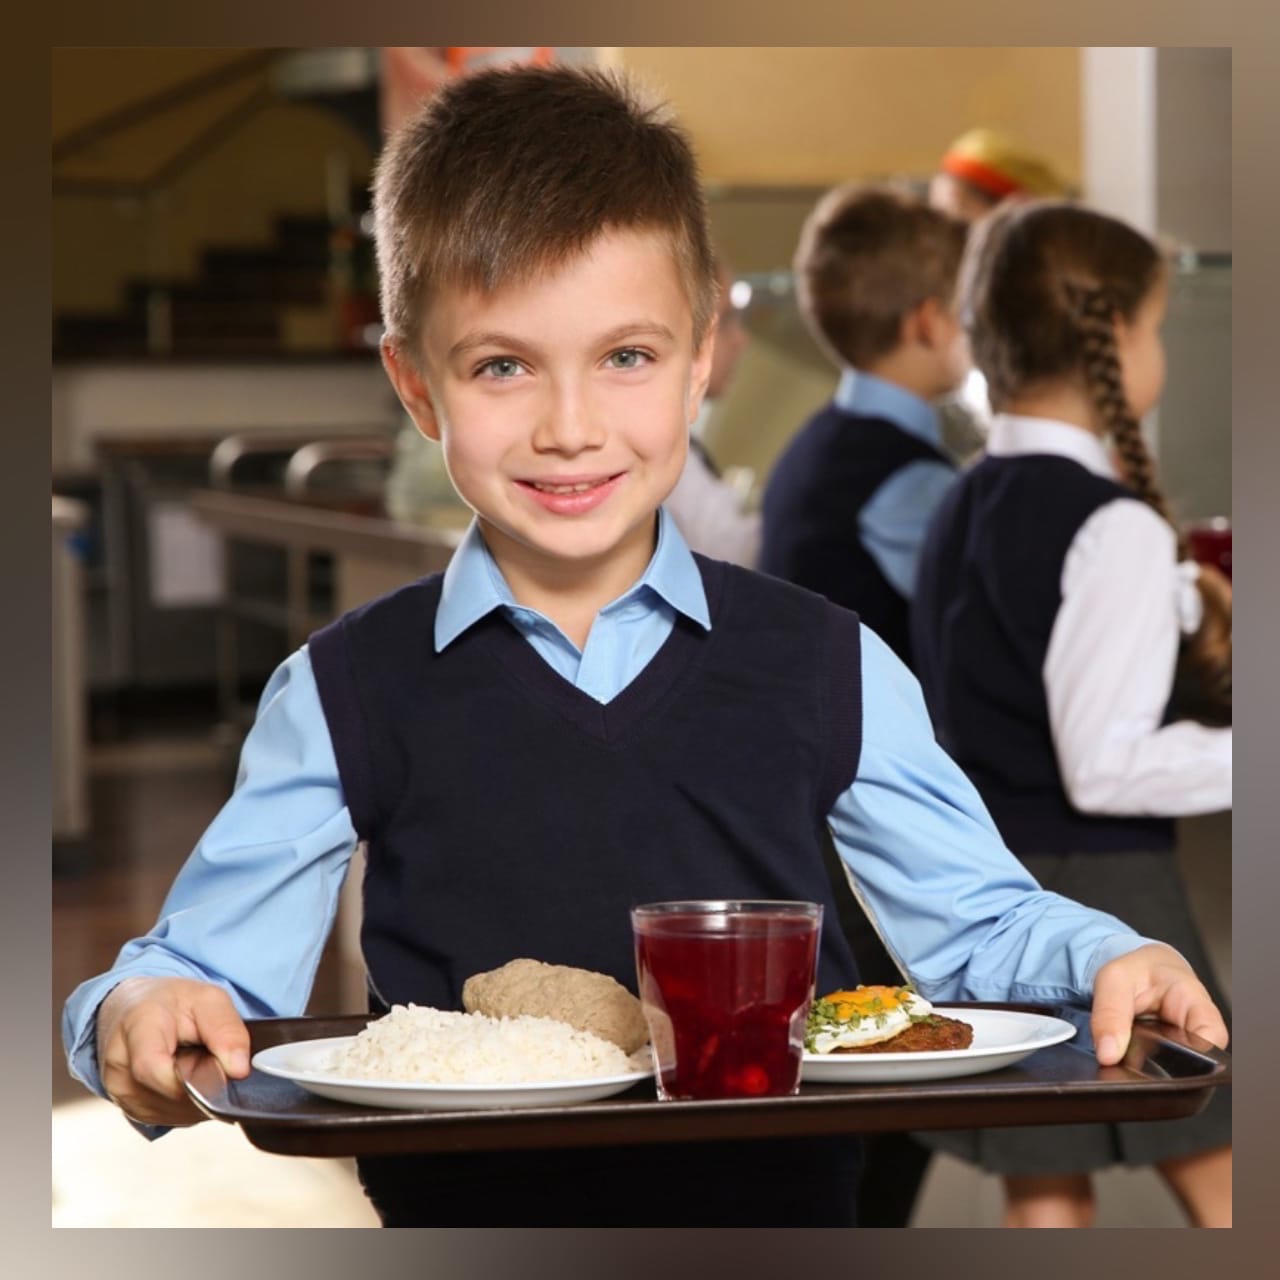 217 смоленских школьников оценили обеды с помощью QR-кода